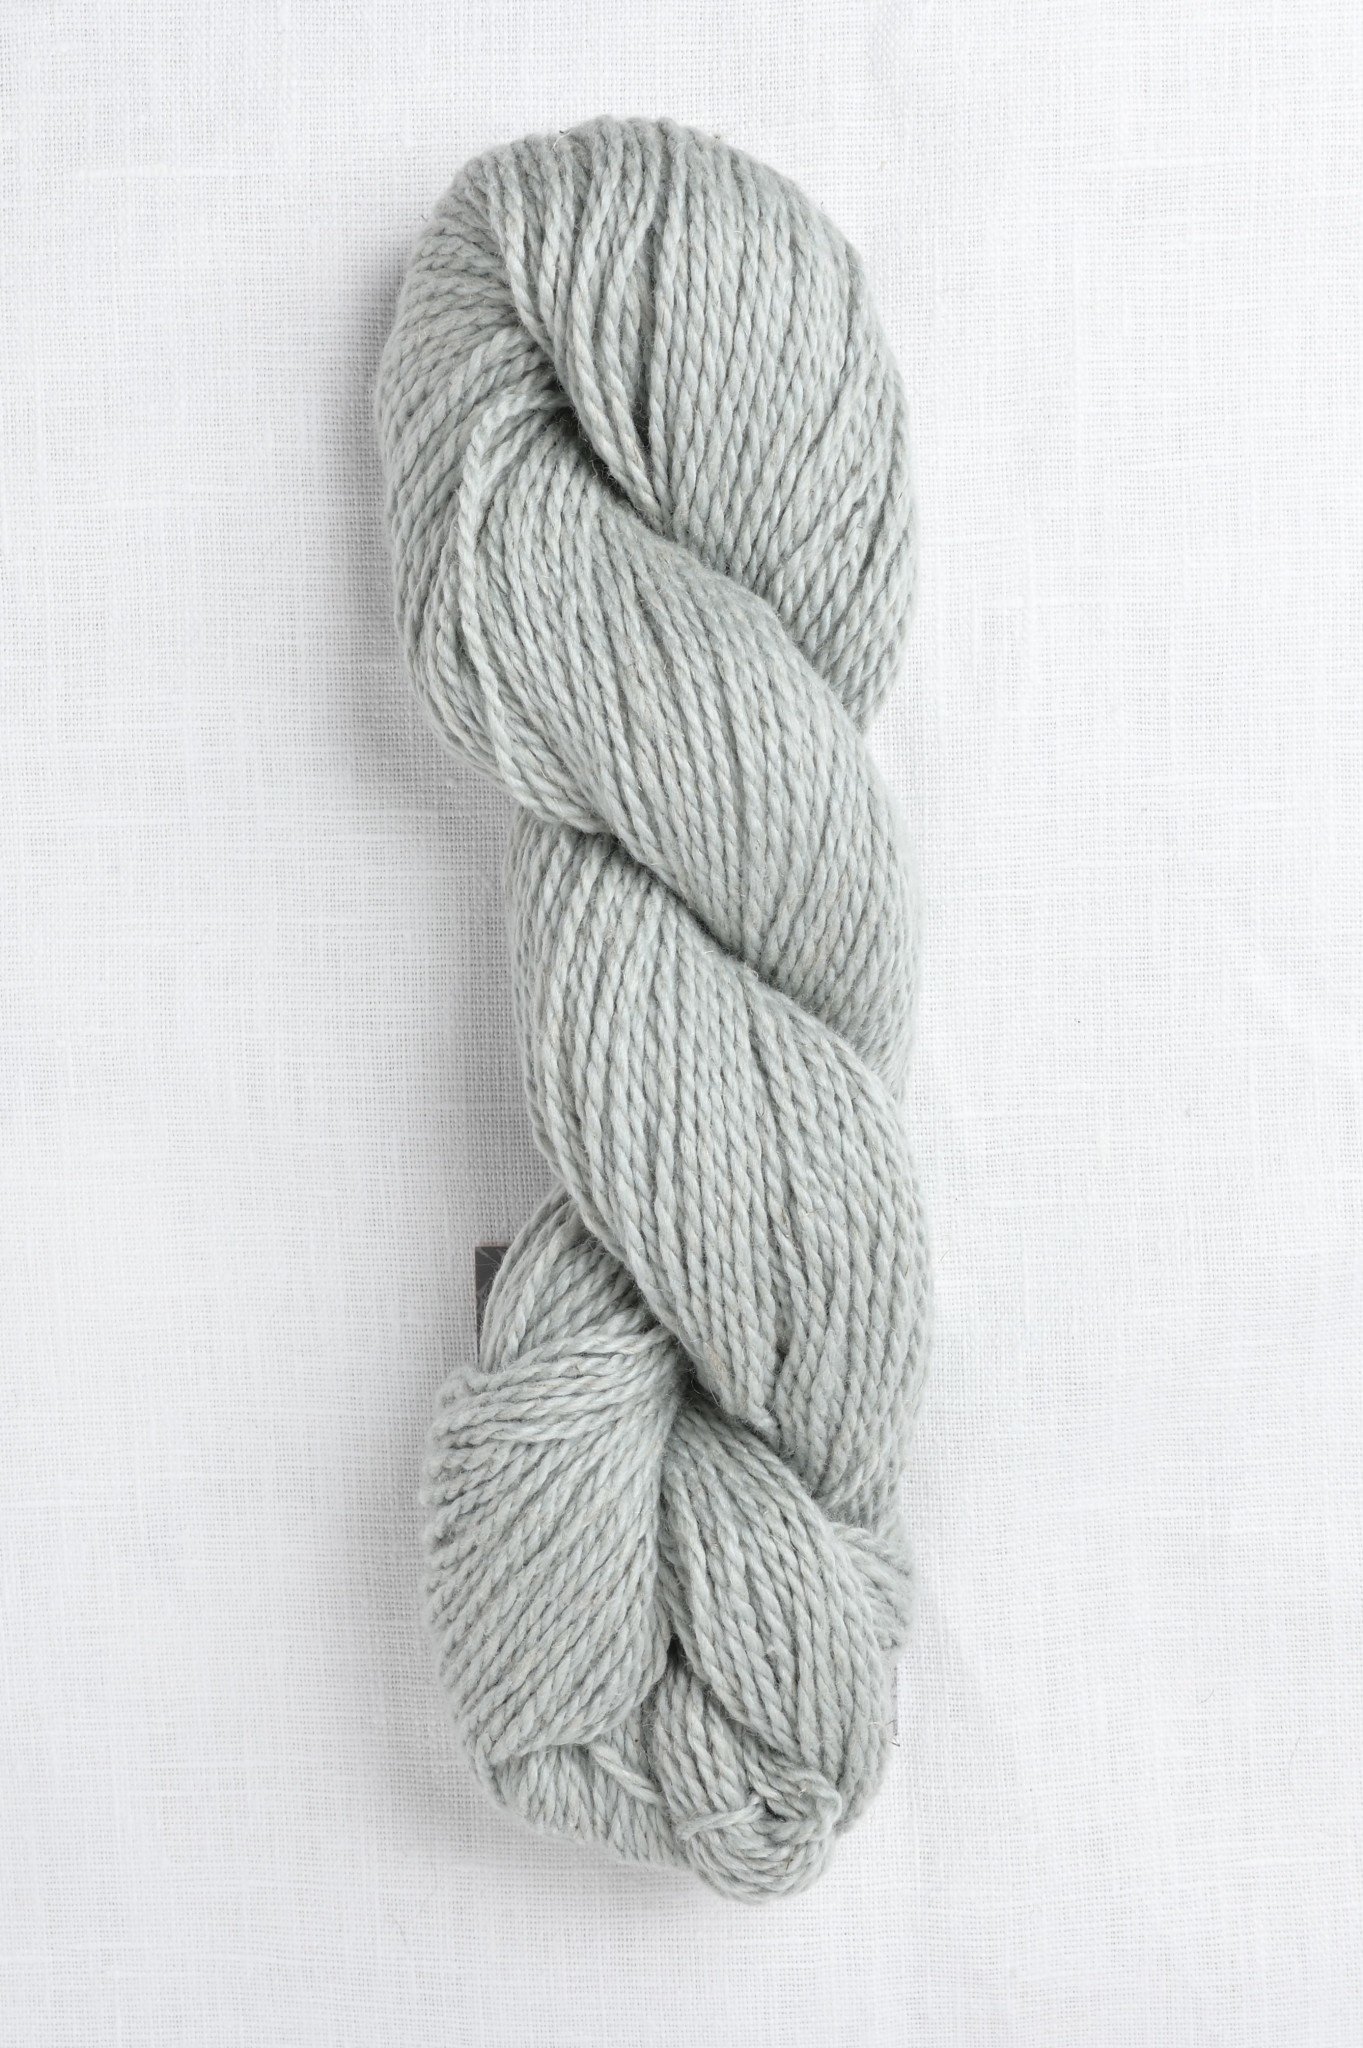 fibre company yarn